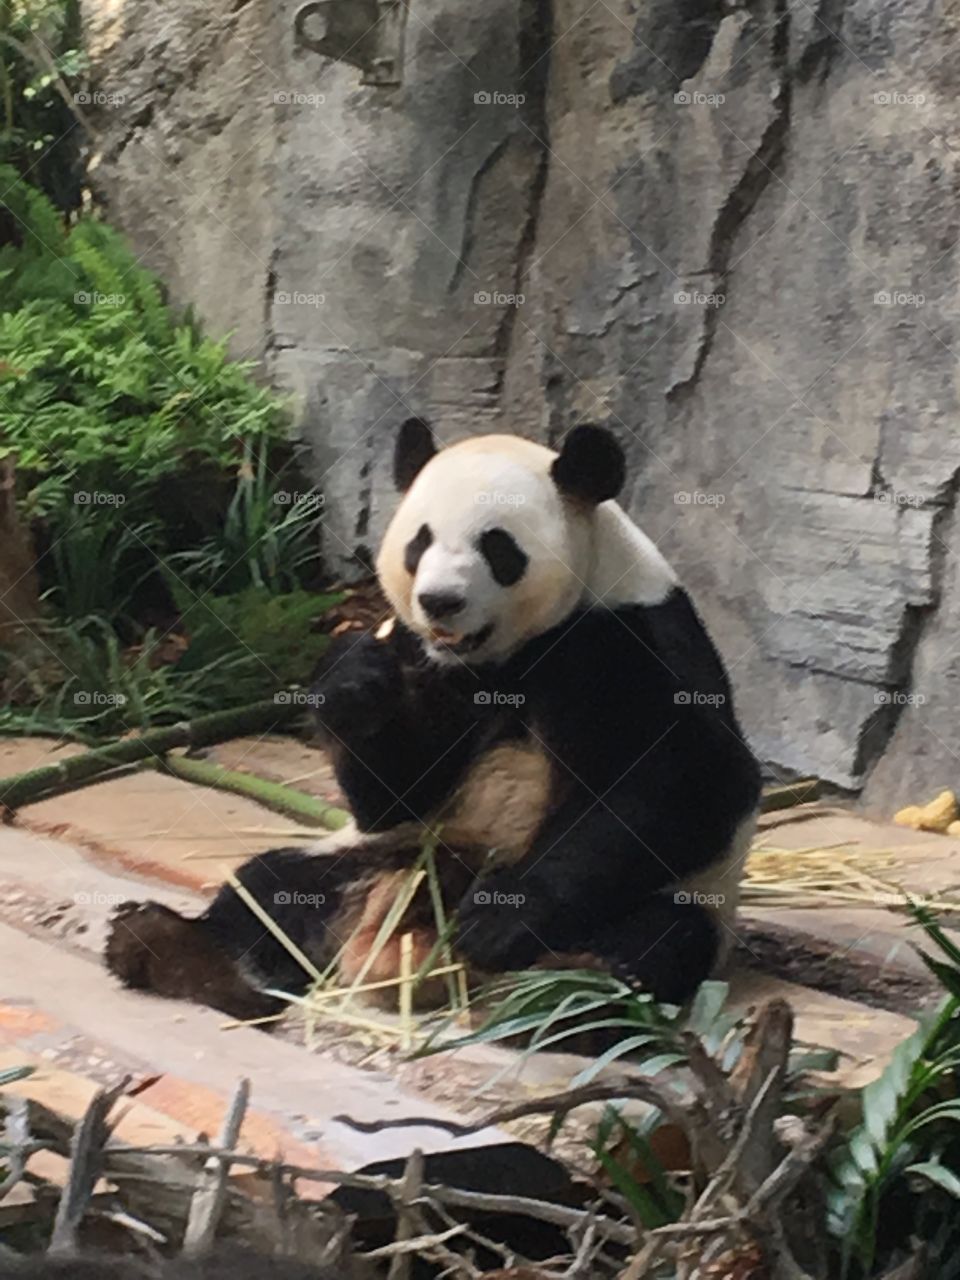 Panda eating bamboo at the zoo. 